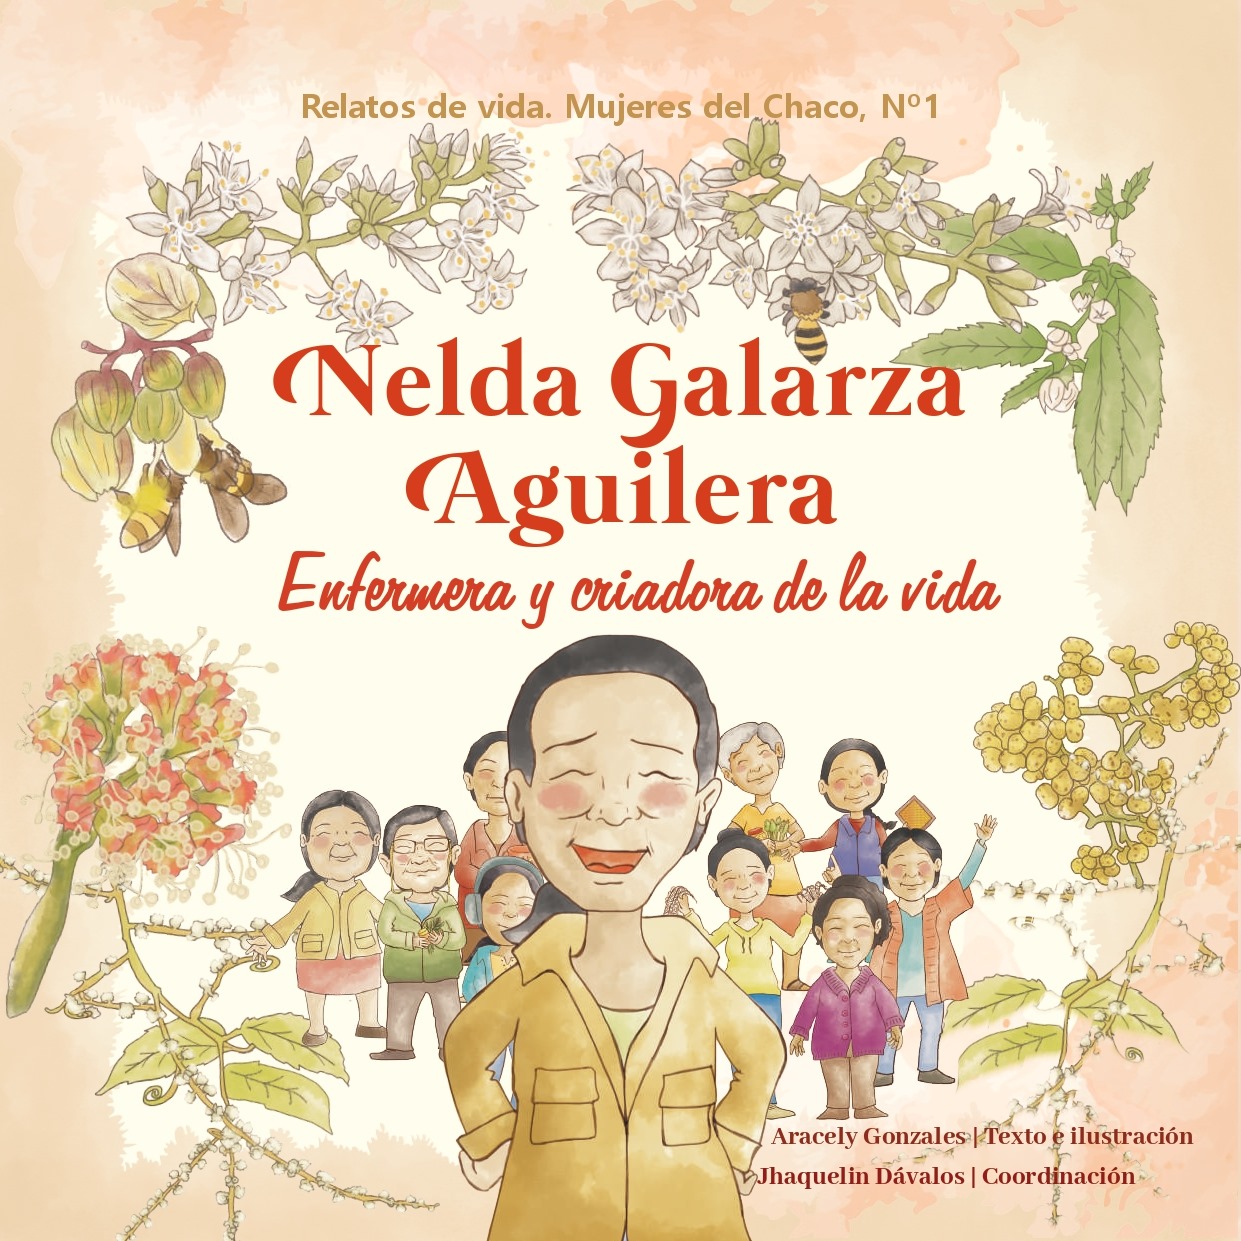 ipdrs Relatos de vida conoces la historia de Nelda Galarza Aguilera, mujer guaraní 2024